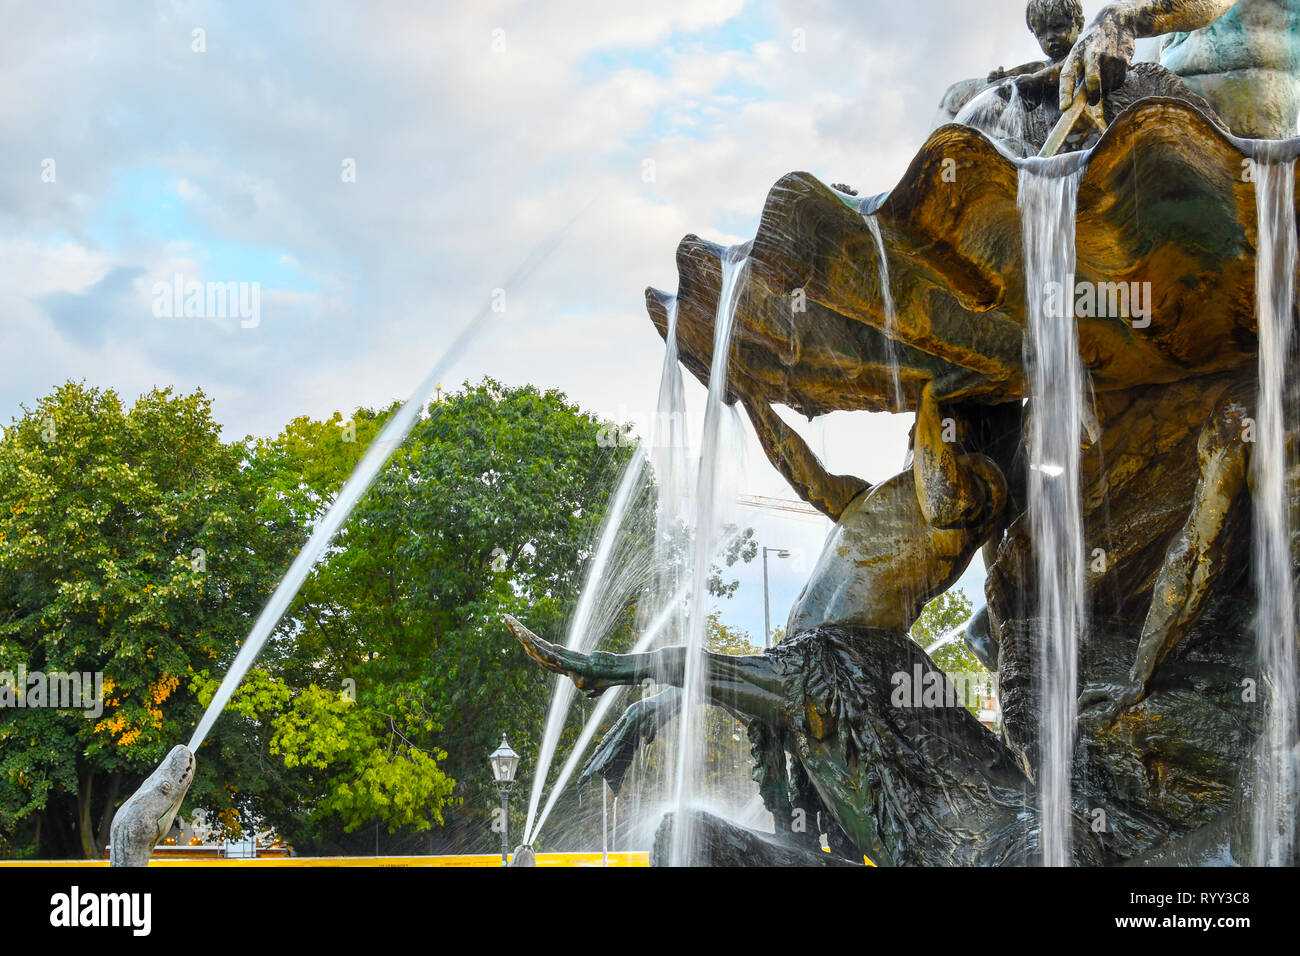 Zeitraffer Volumenkörper erzeugen Ströme von Wasser schießen aus einer Schlange Mund und rund um das Bein von einem Satyr auf den Neptunbrunnen in Berlin Deutschland Stockfoto